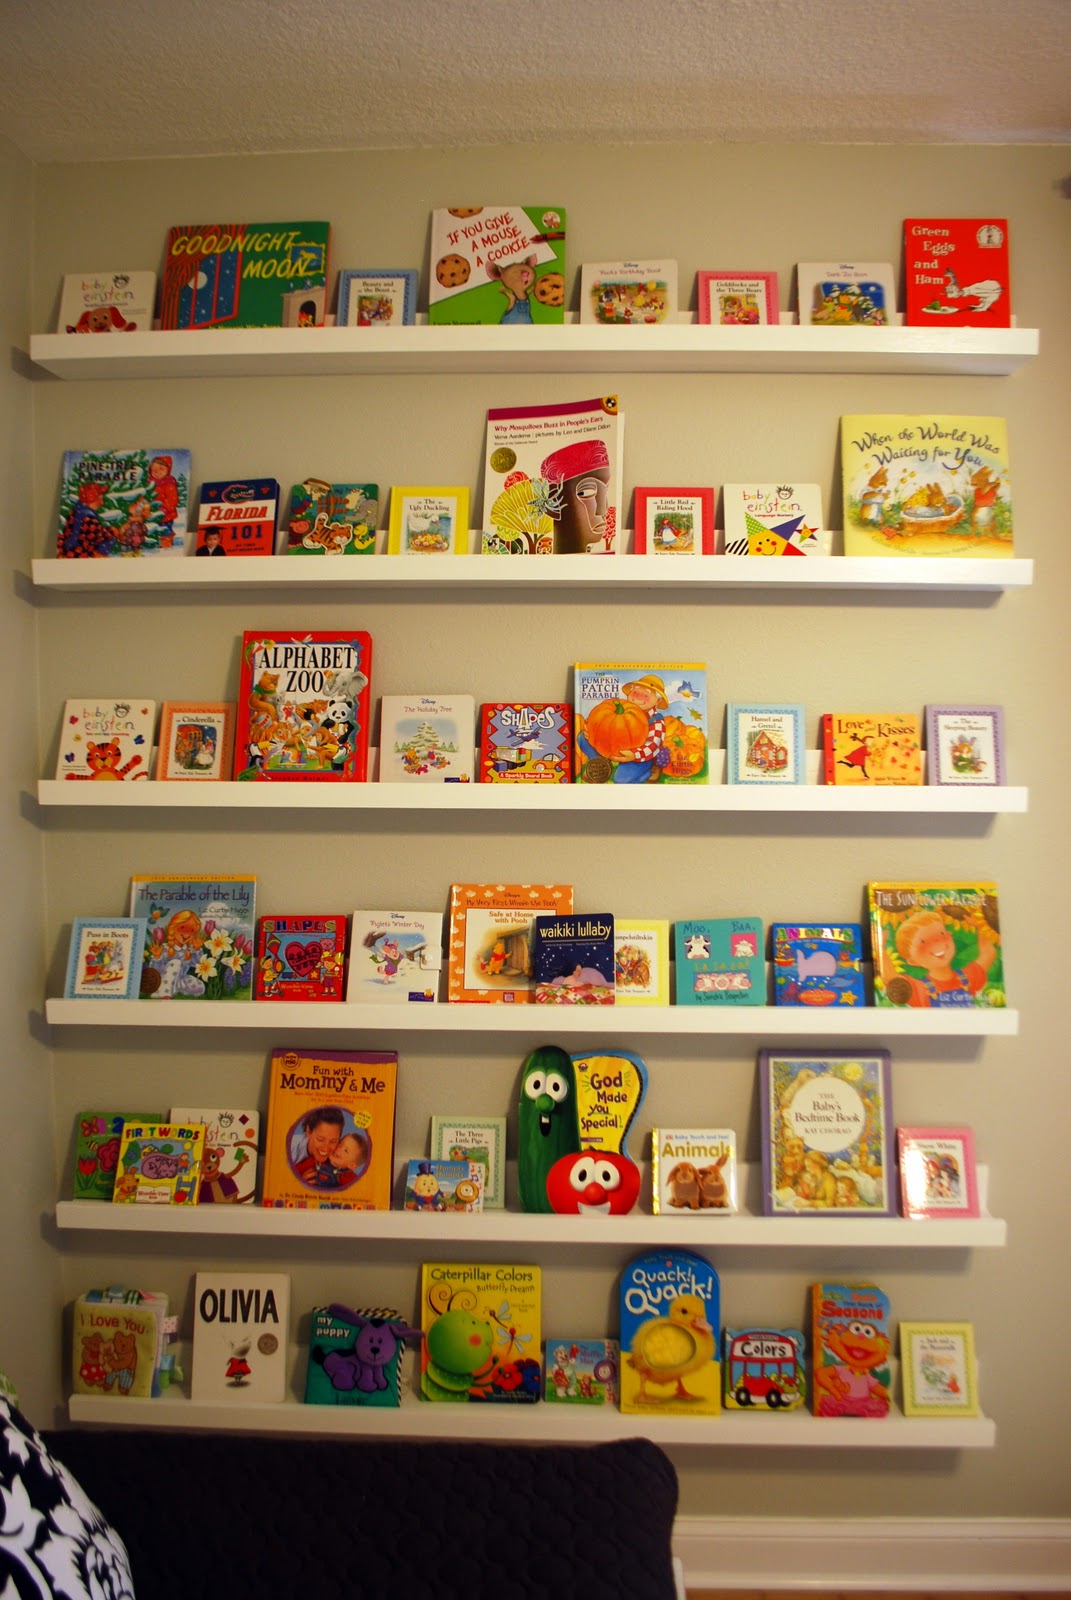 Nursery Room Book Shelves from $10 Ledge Plan